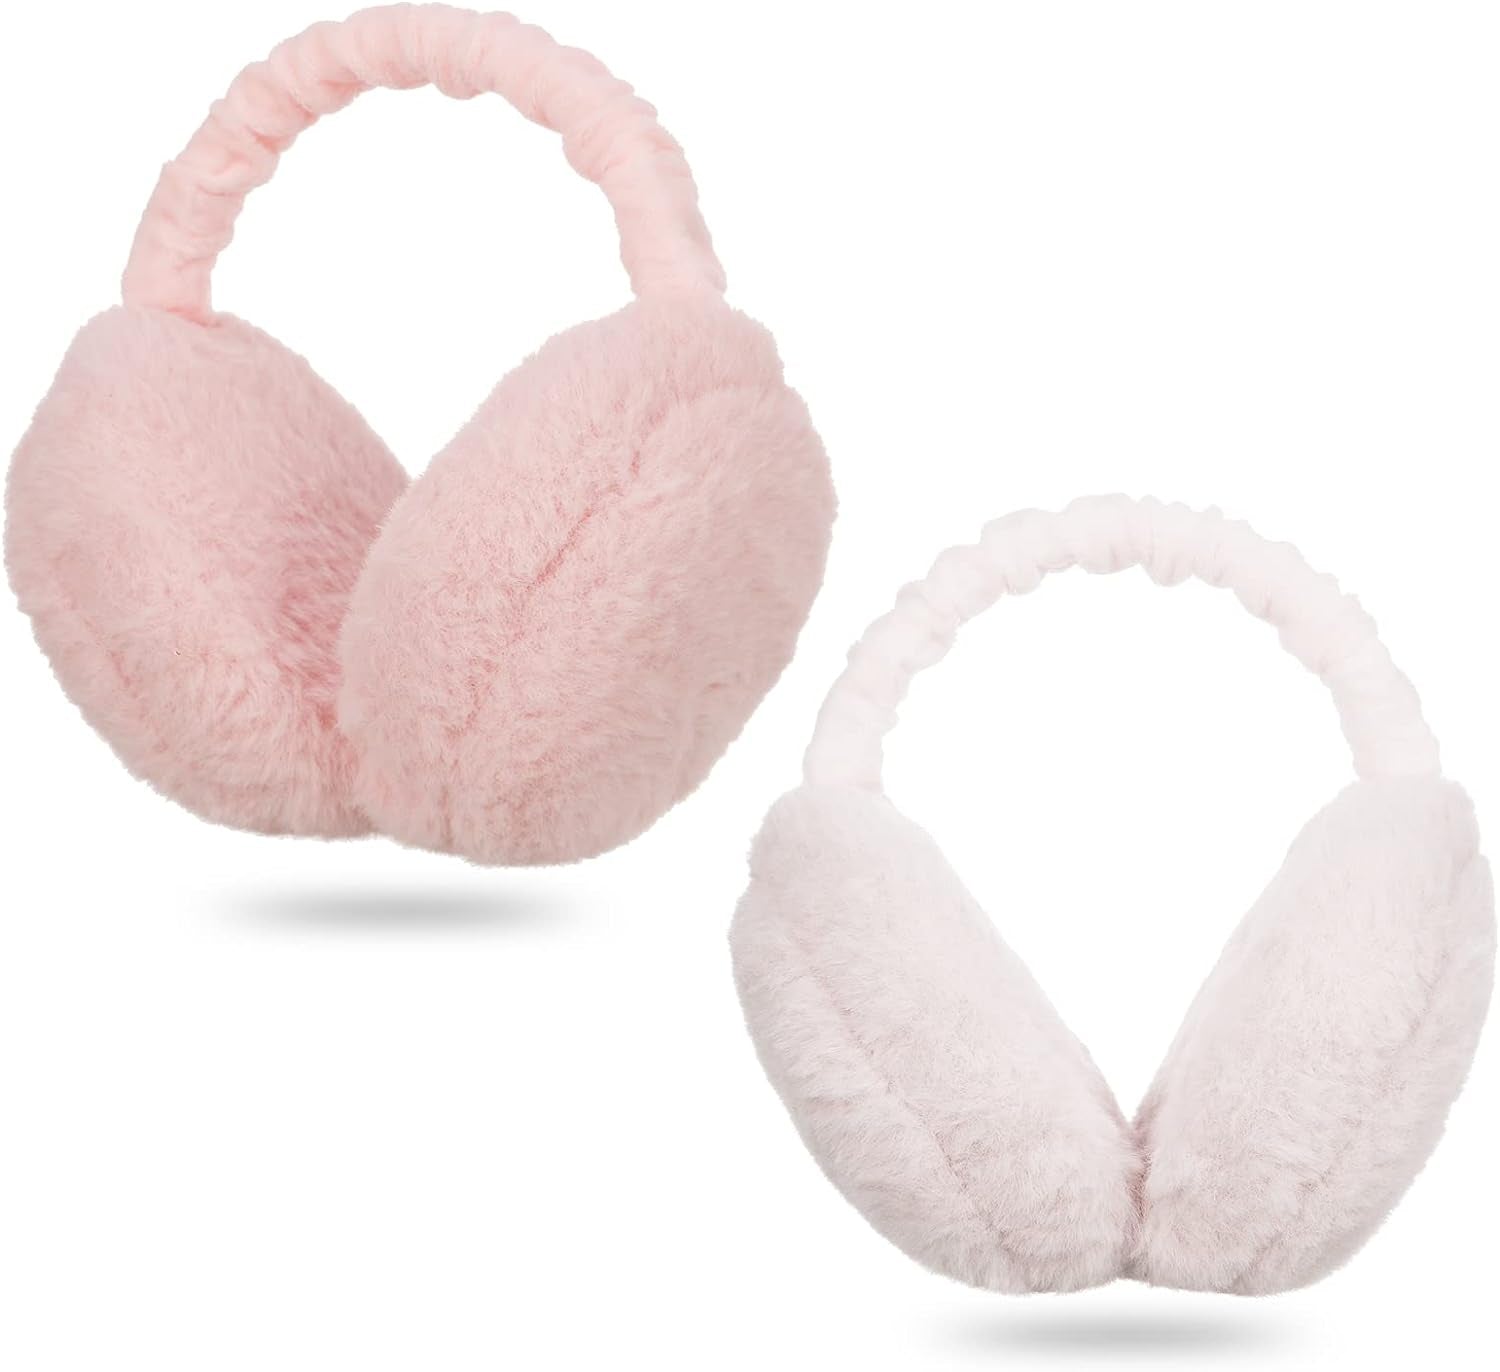 Women Earmuffs,2Pcs Winter Ear Muffs Adjustable Faux Fur Ear Warmer Warm Windproof Plush Earmuffs Foldable for Men Girl Thanksgiving